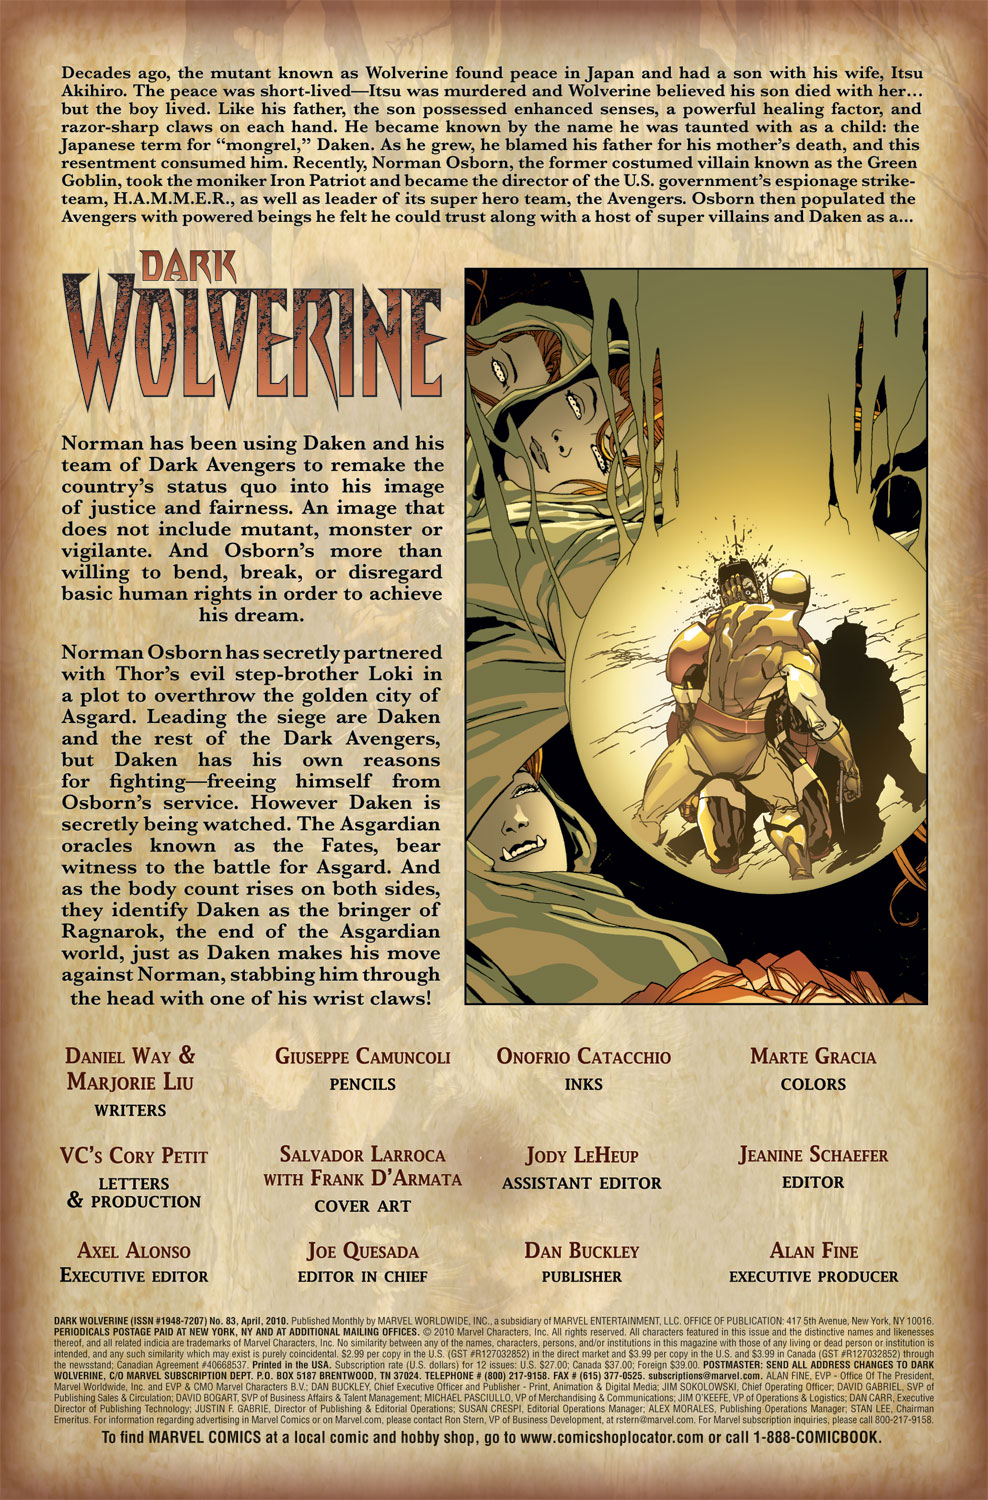 Dark Wolverine 83 Page 1